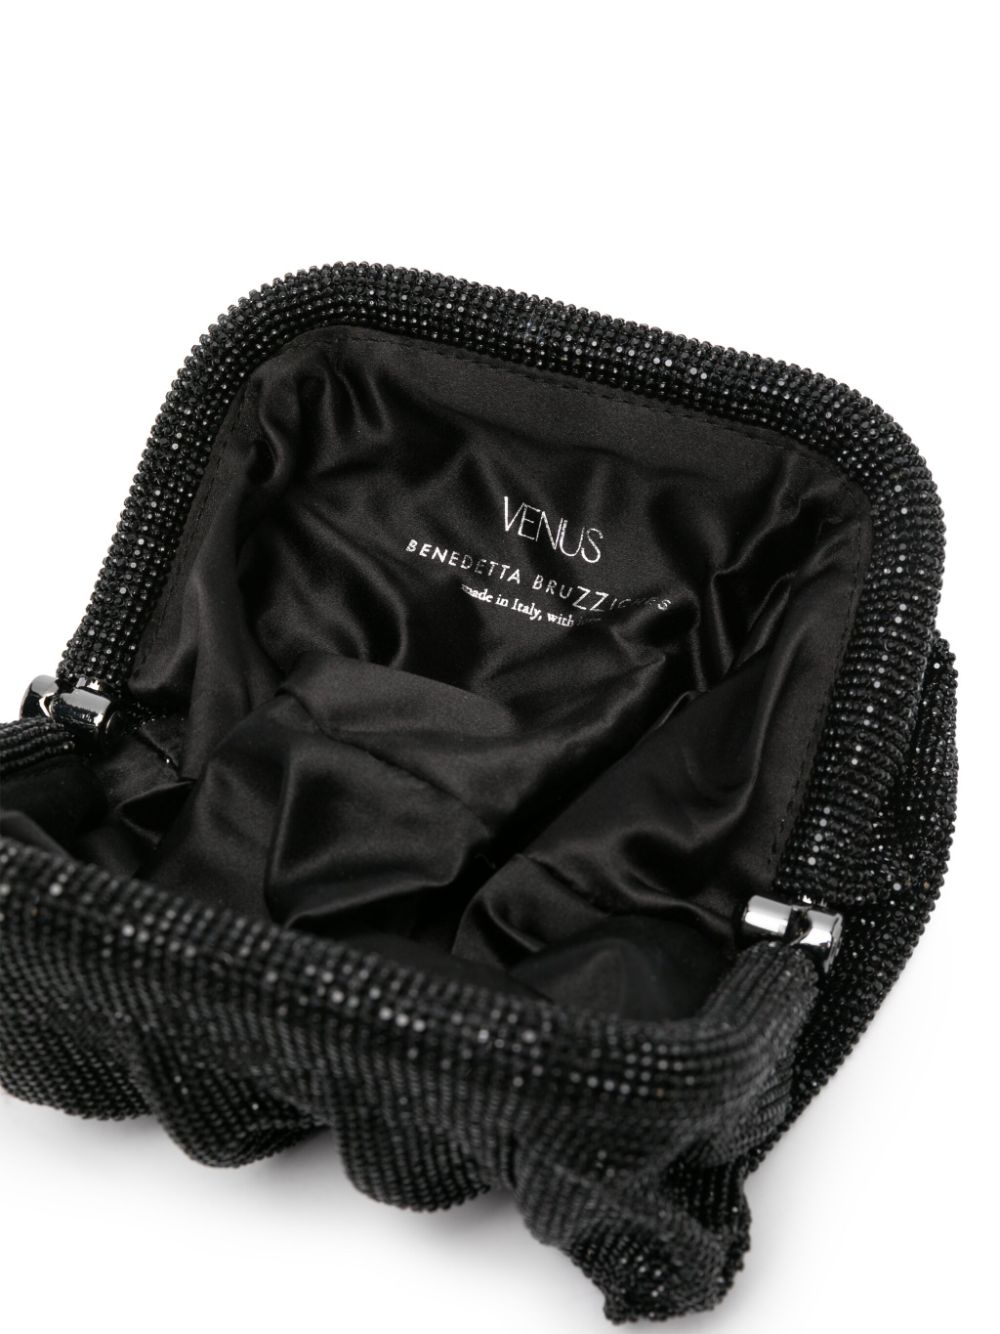 Shop Benedetta Bruzziches Venus Rhinestoned Clutch Bag In Black